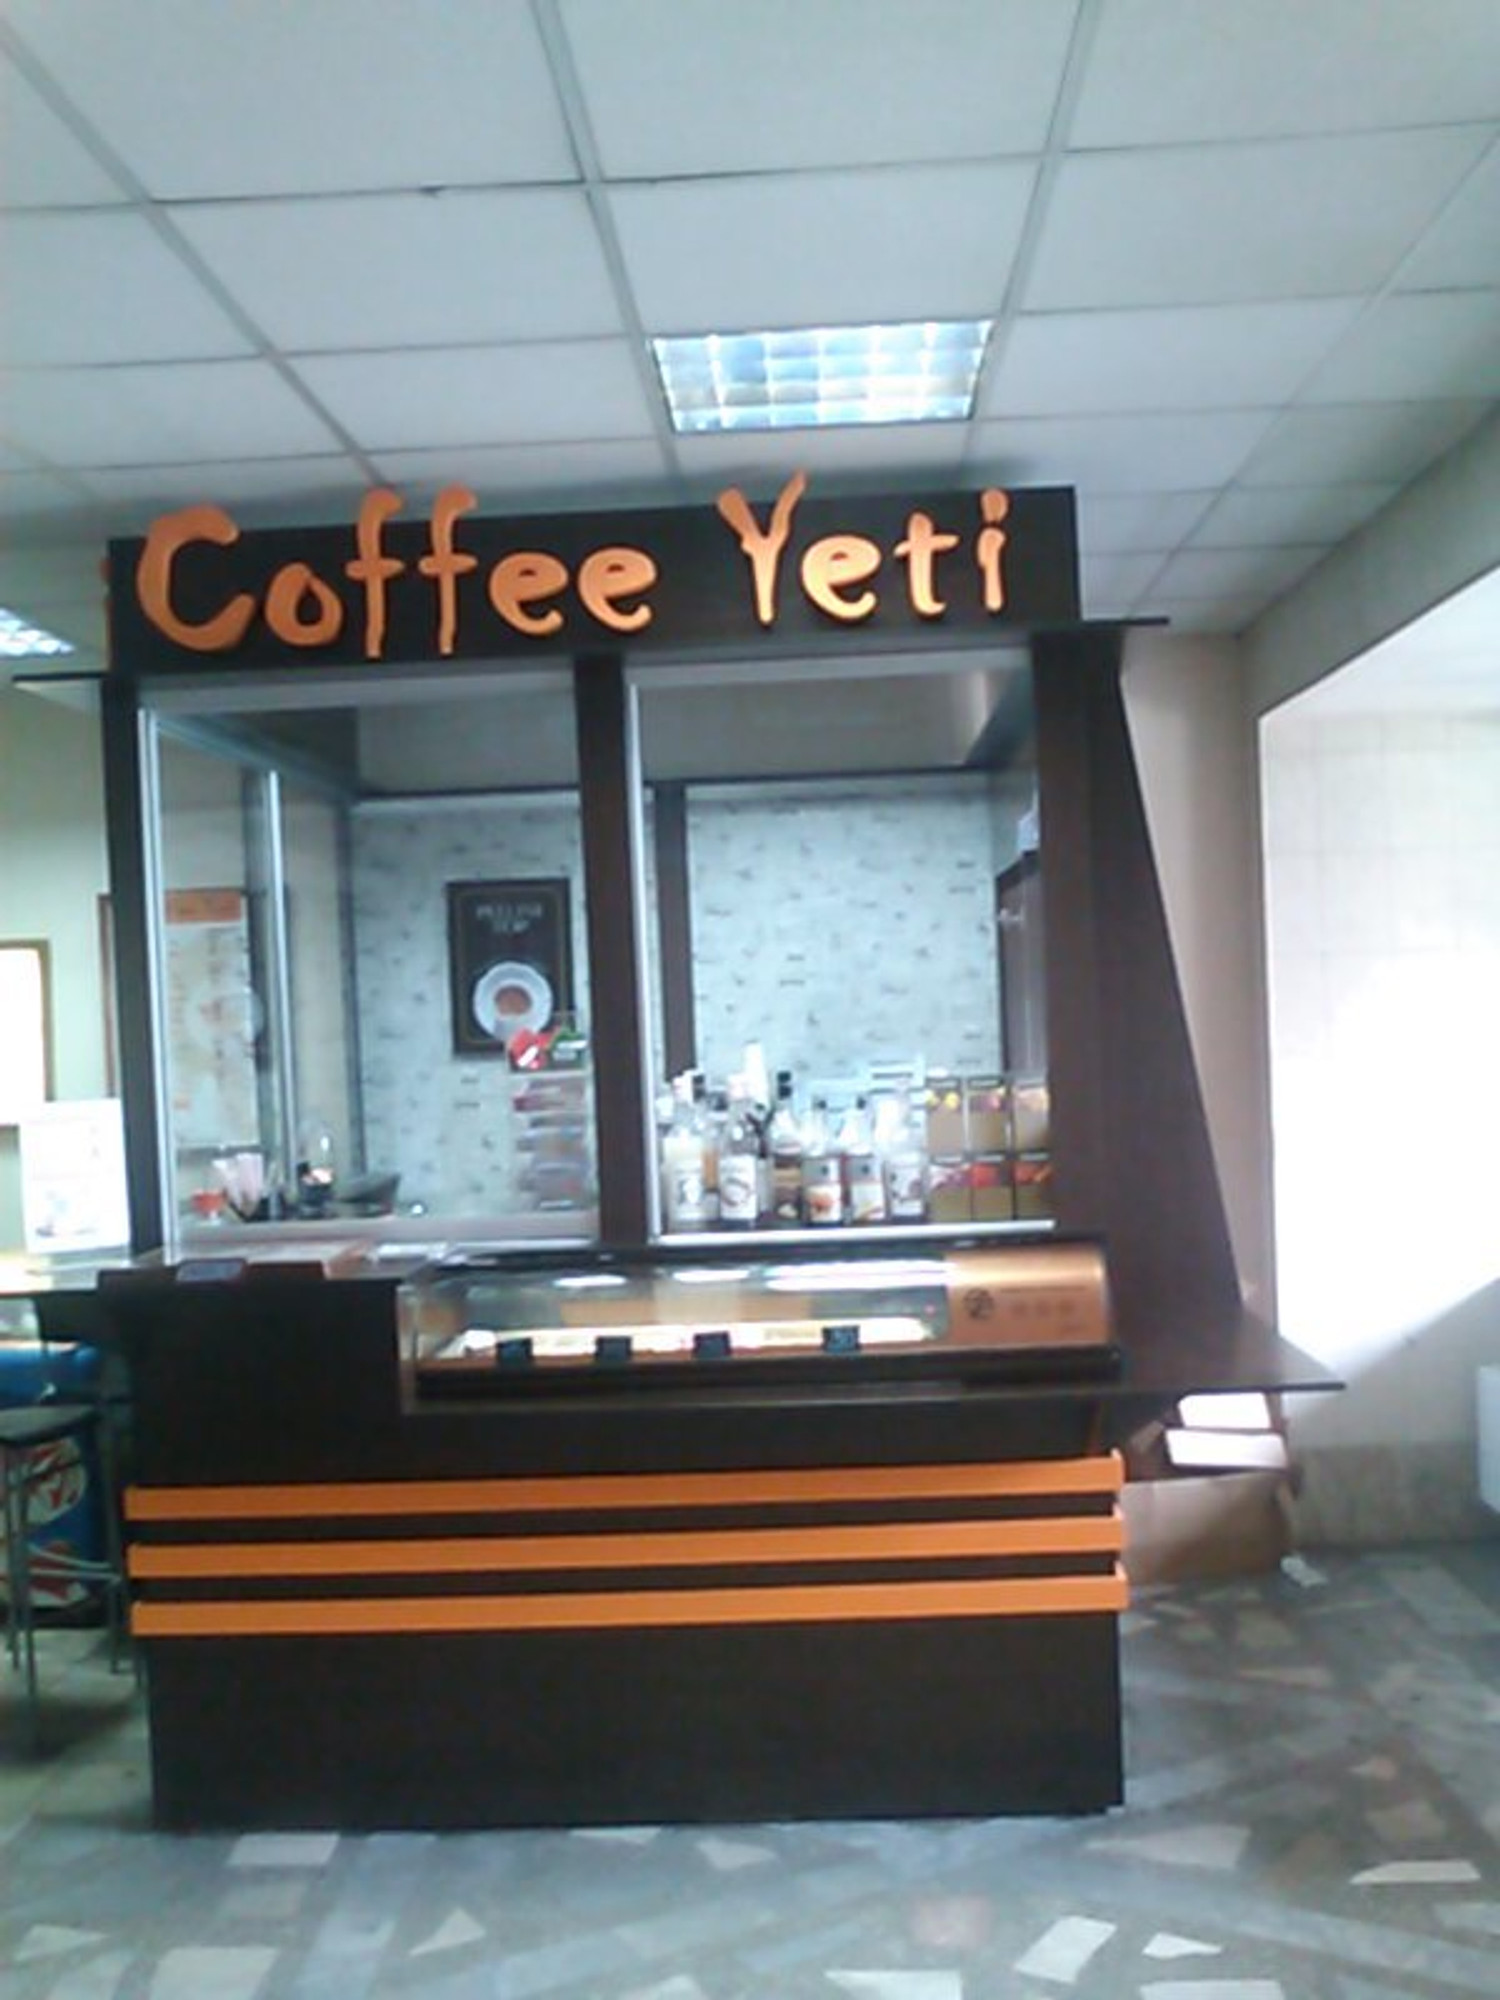 Coffee Yeti (Кофейня)